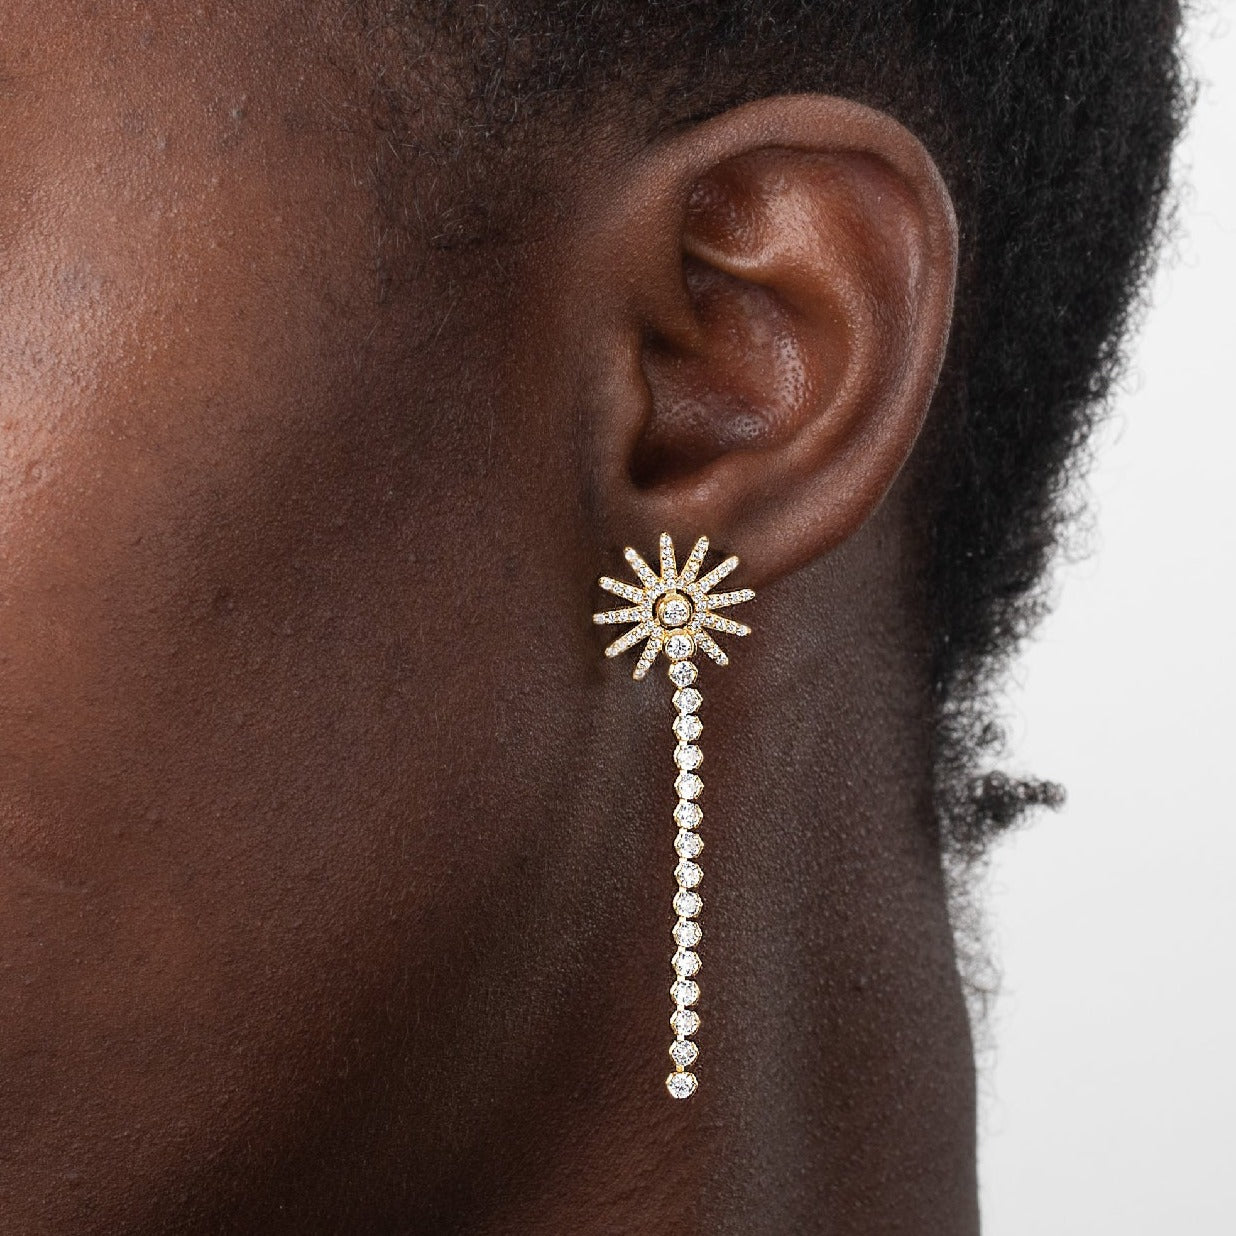 Sol Riviere earrings